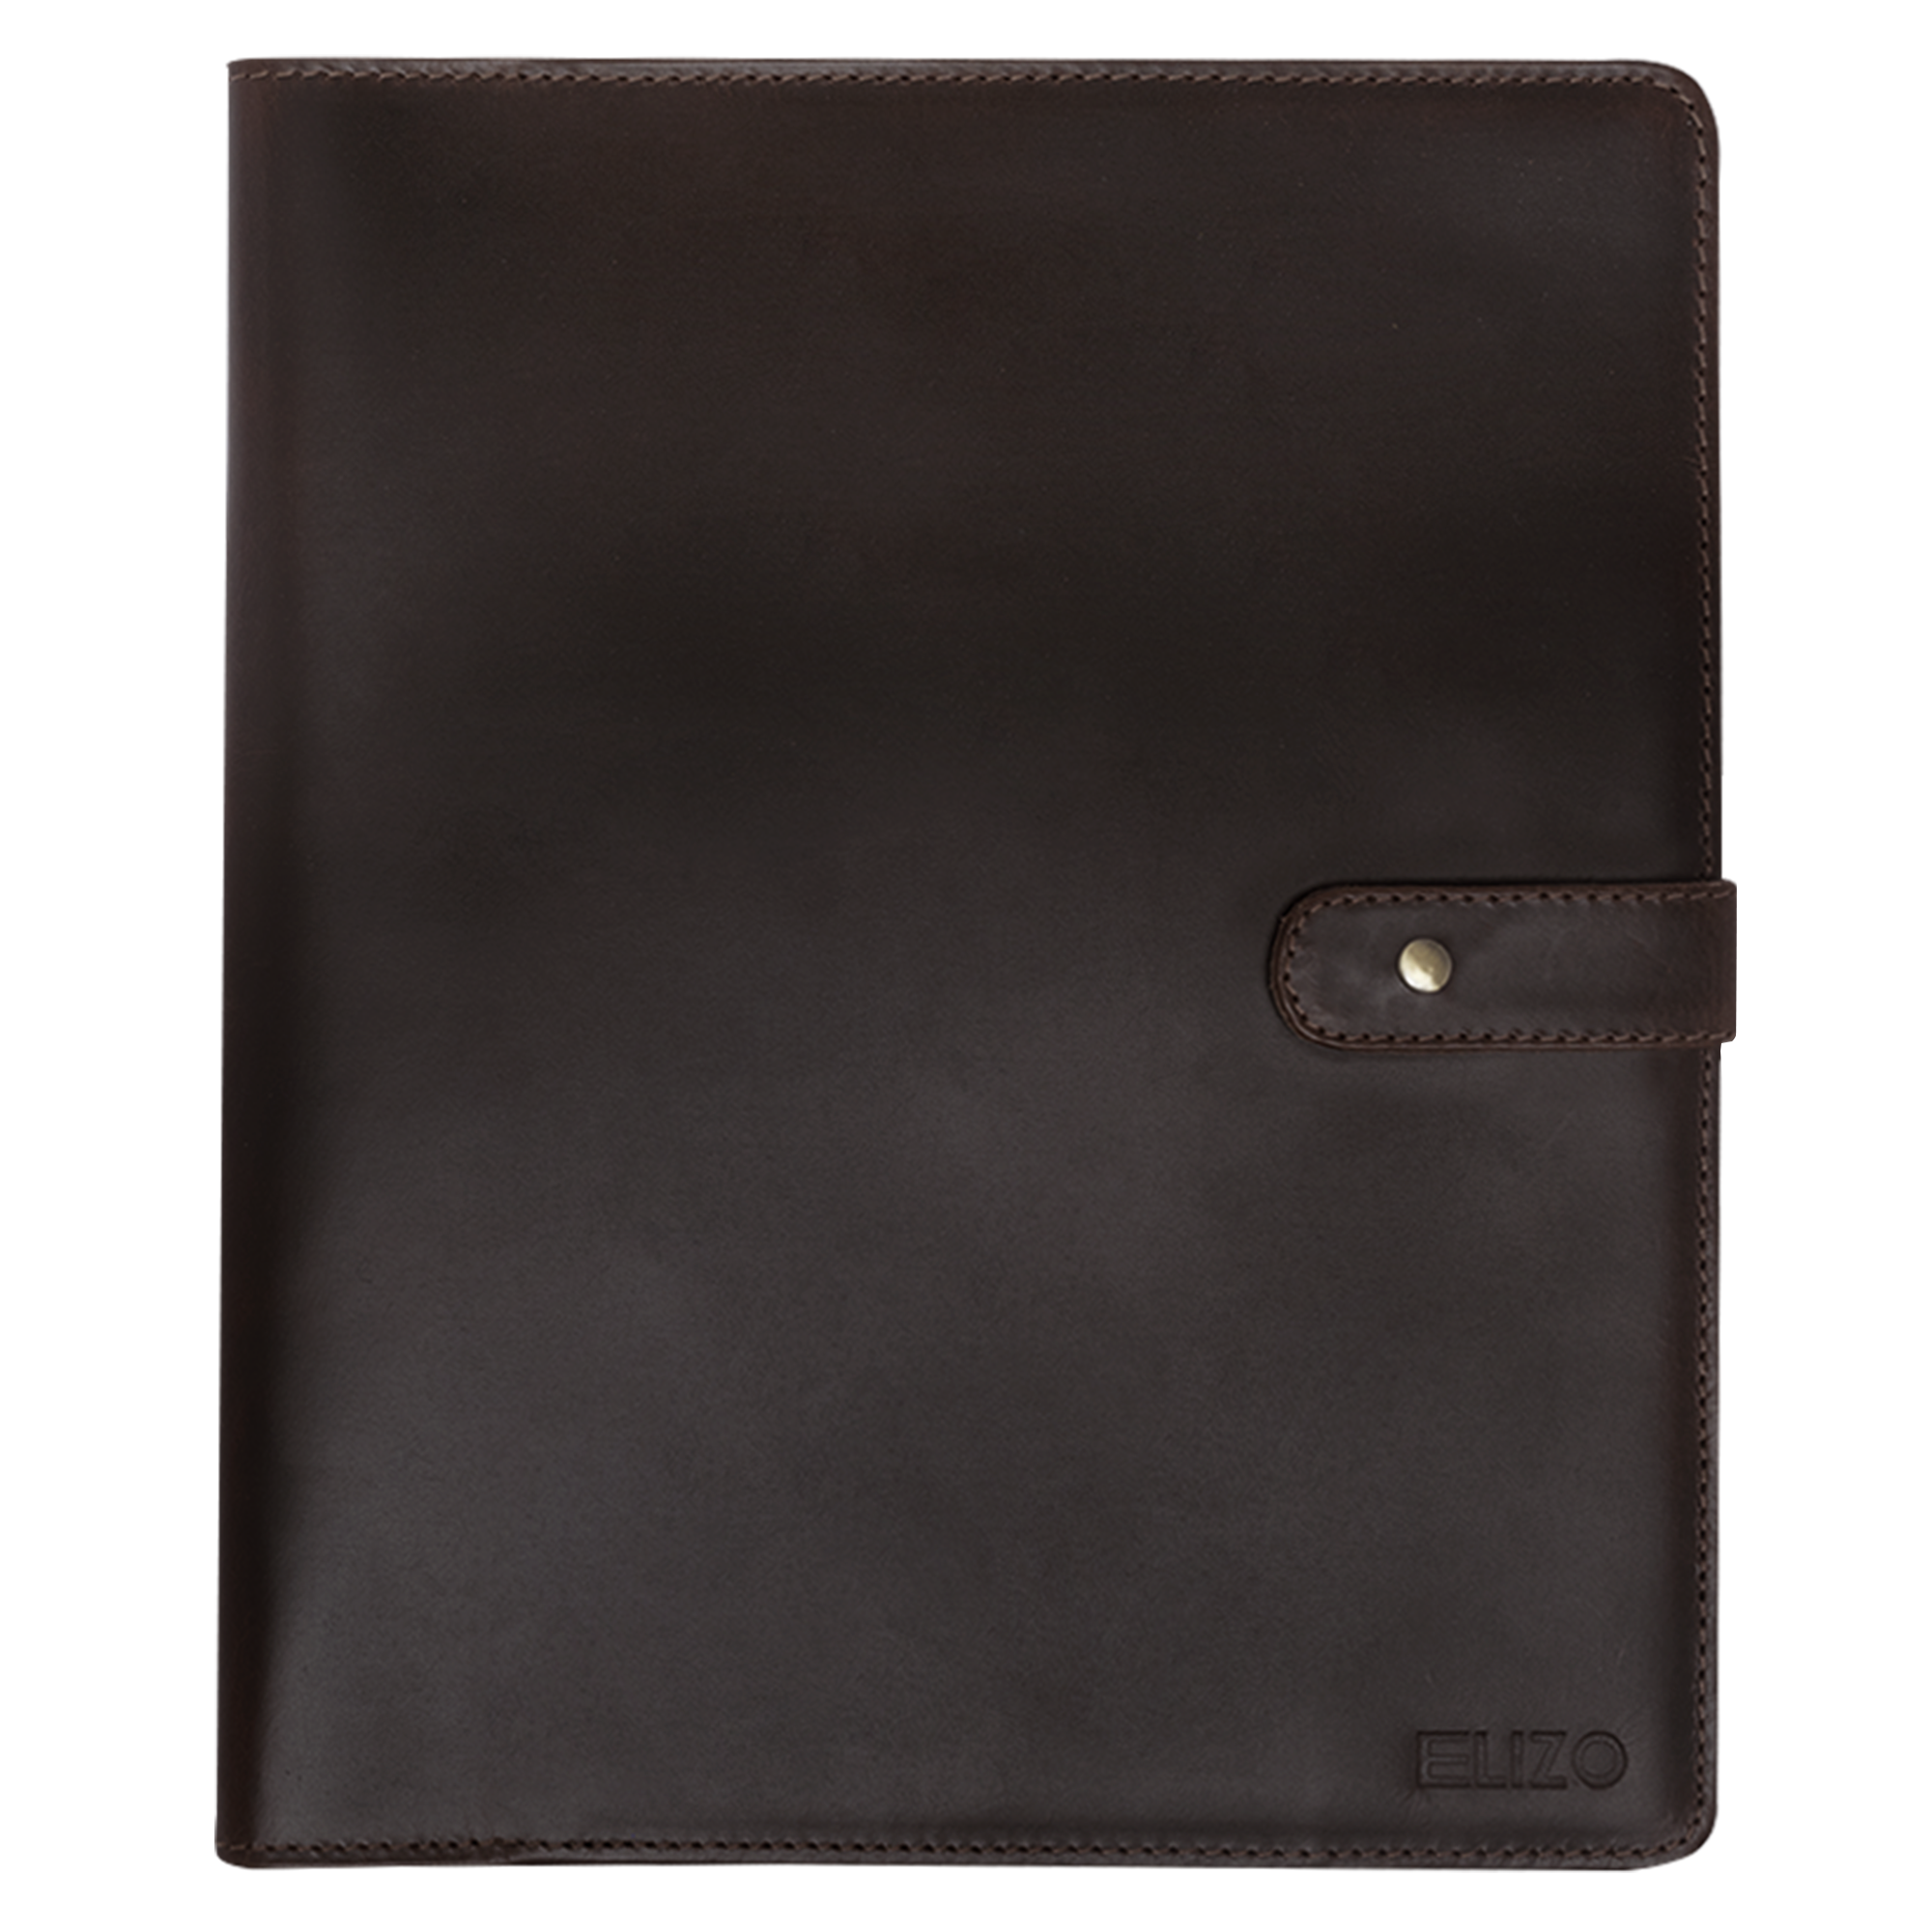 Leather Notebook Cover Rocketbook - Walnut (Rocket Letter)